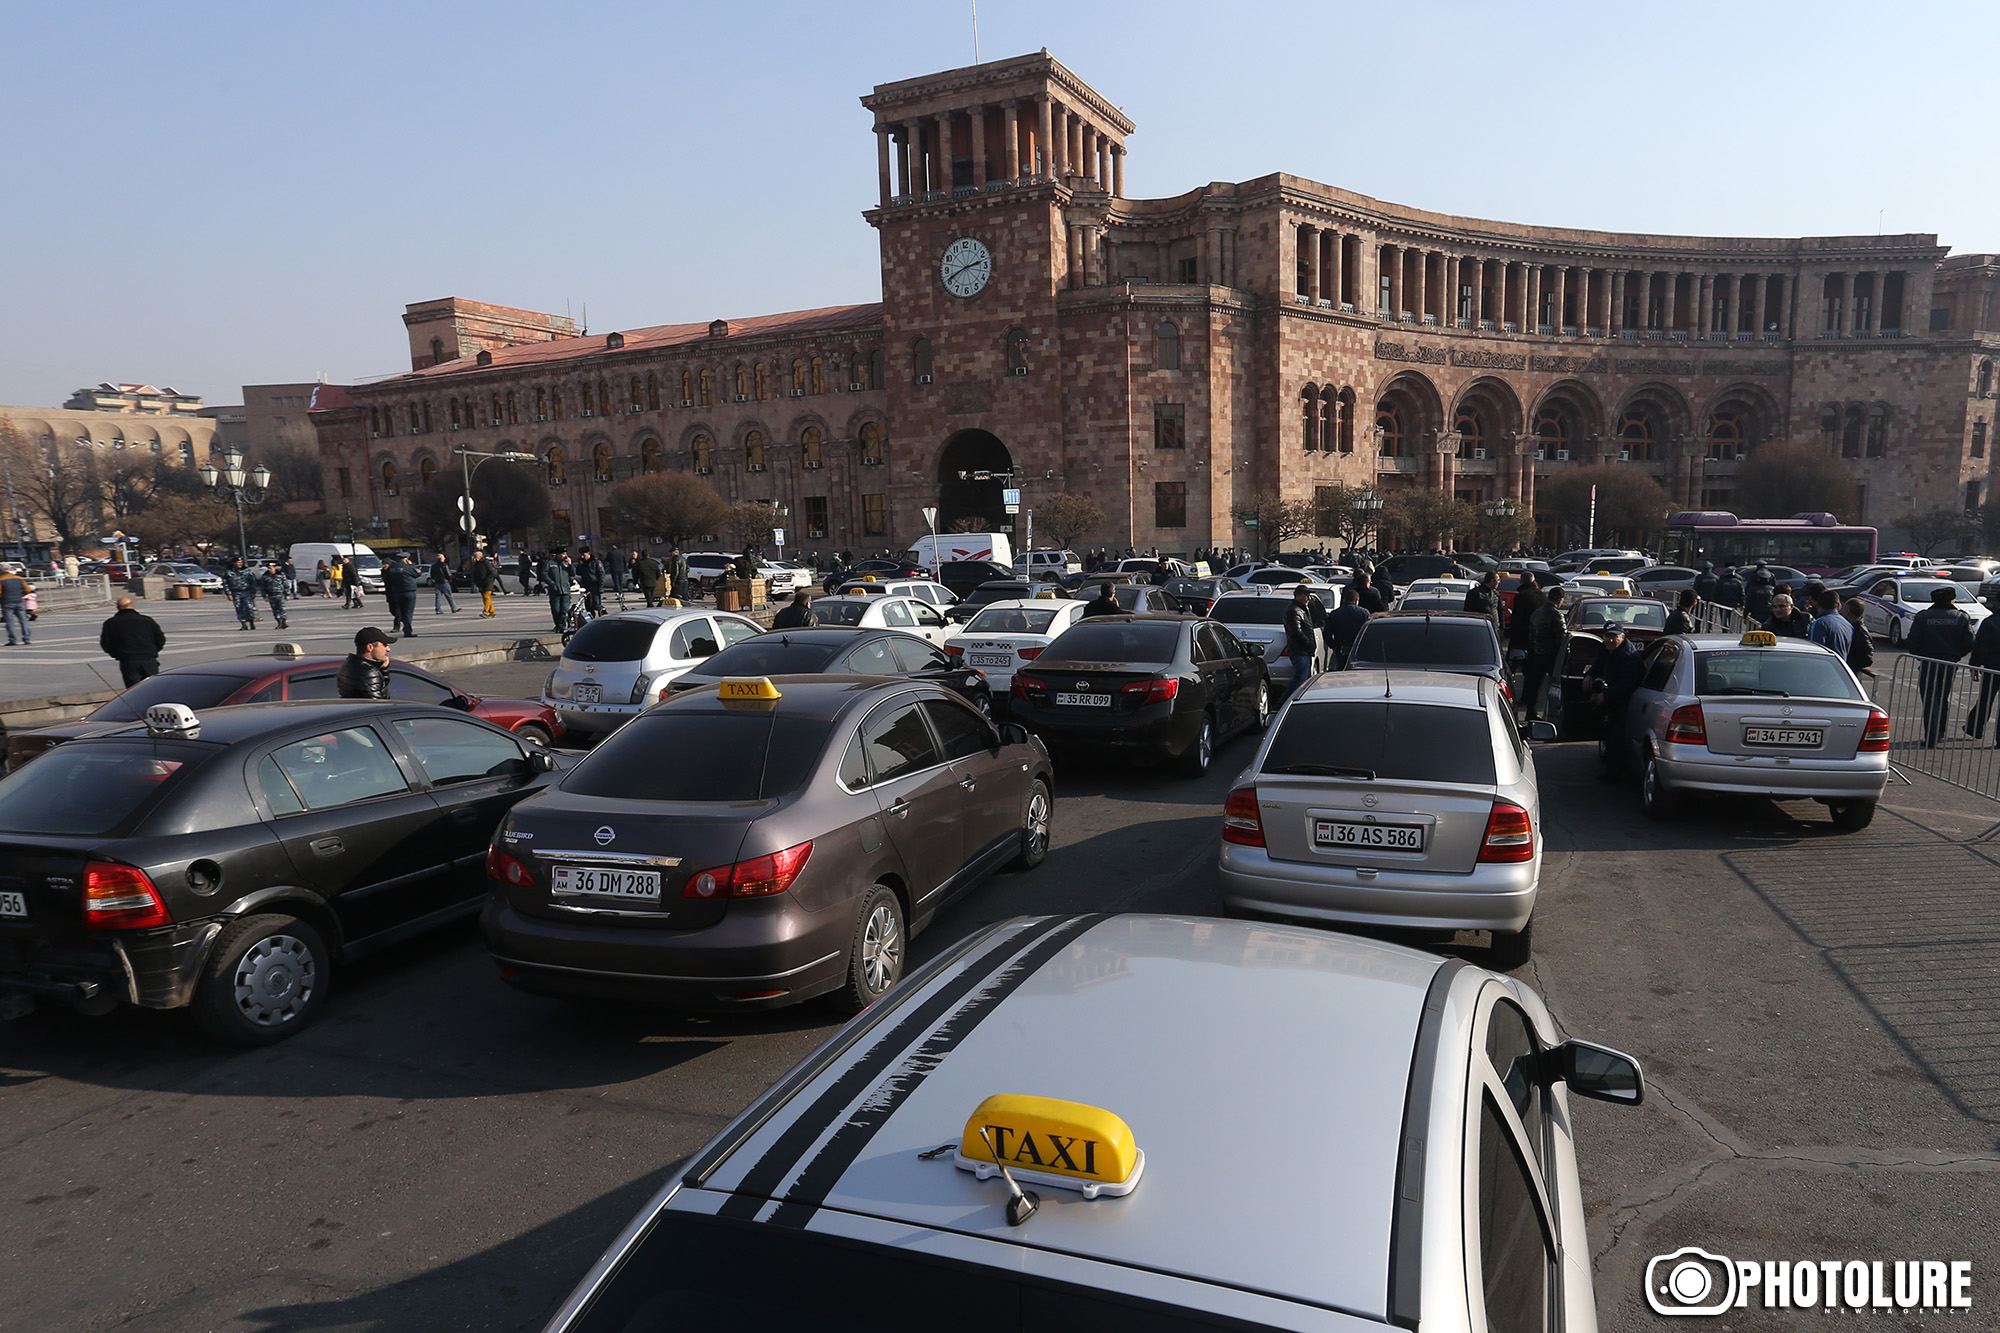 Ո՛չ բալային համակարգին, ո՛չ հարկերին ու ո՛չ online taxi-ներին. տաքսու վարորդները դժգոհ են